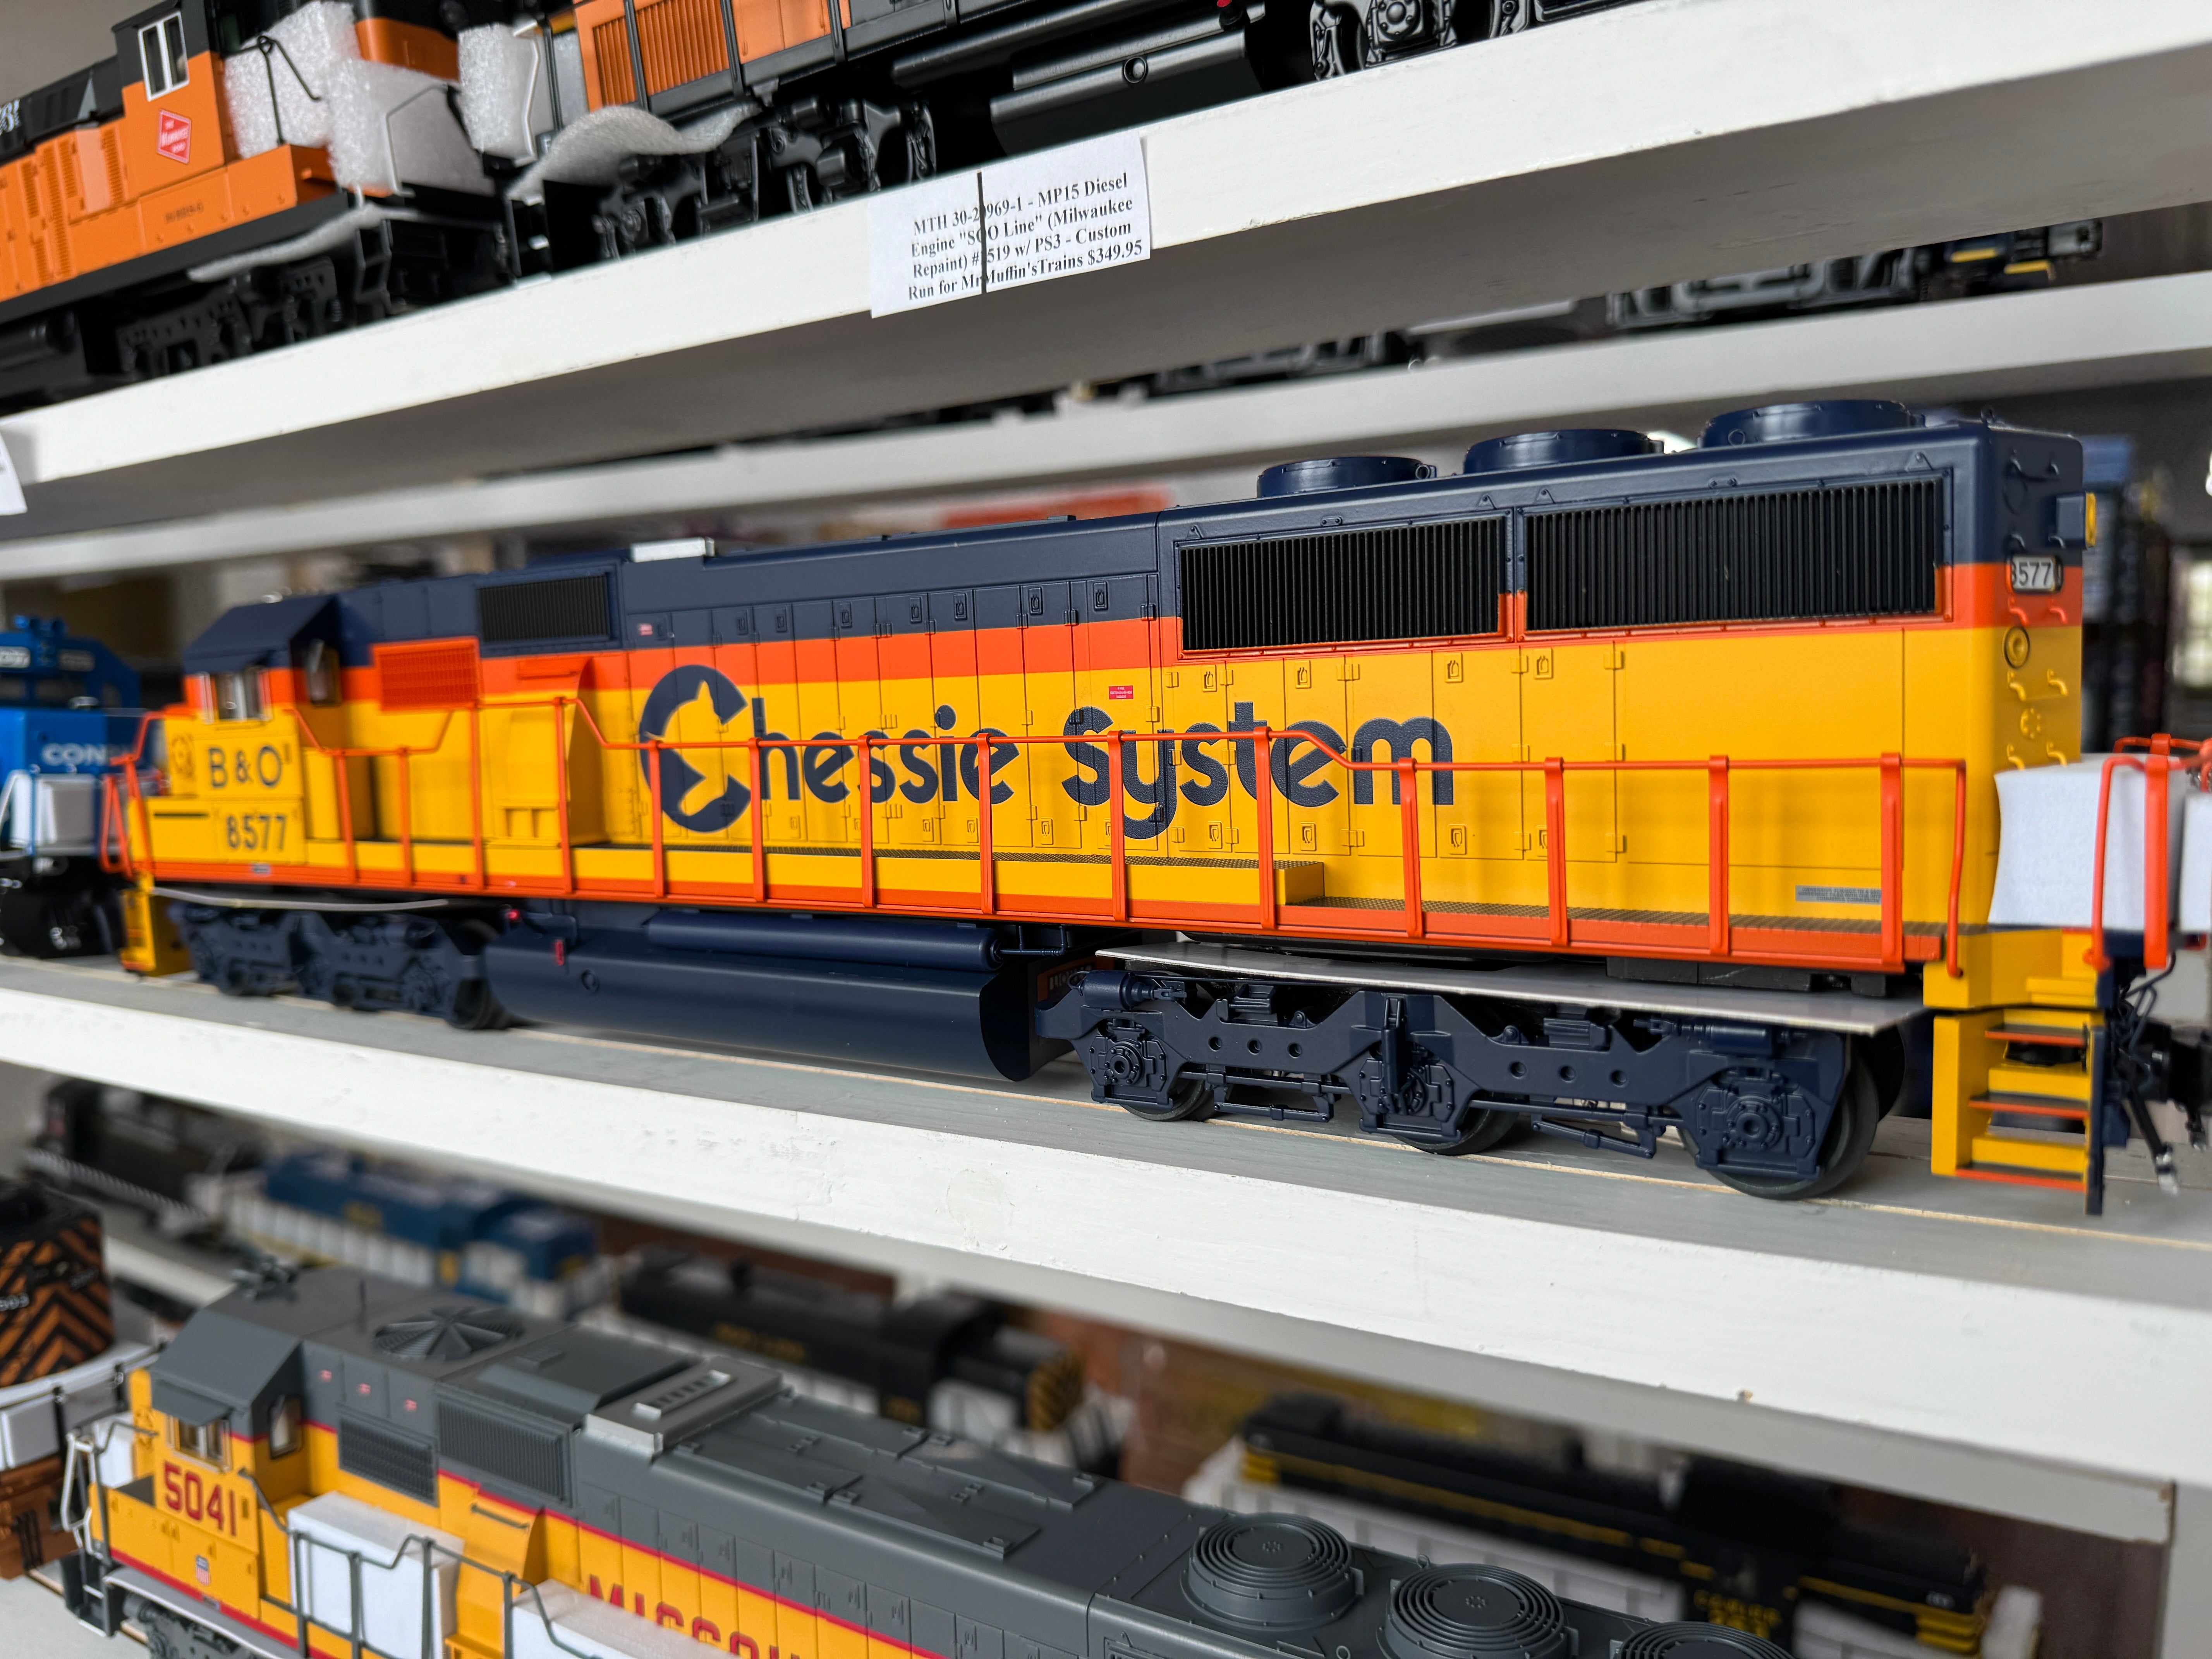 Lionel 2433231 - Legacy SD50 Diesel Engine "Baltimore & Ohio" #8577 (Chessie System)